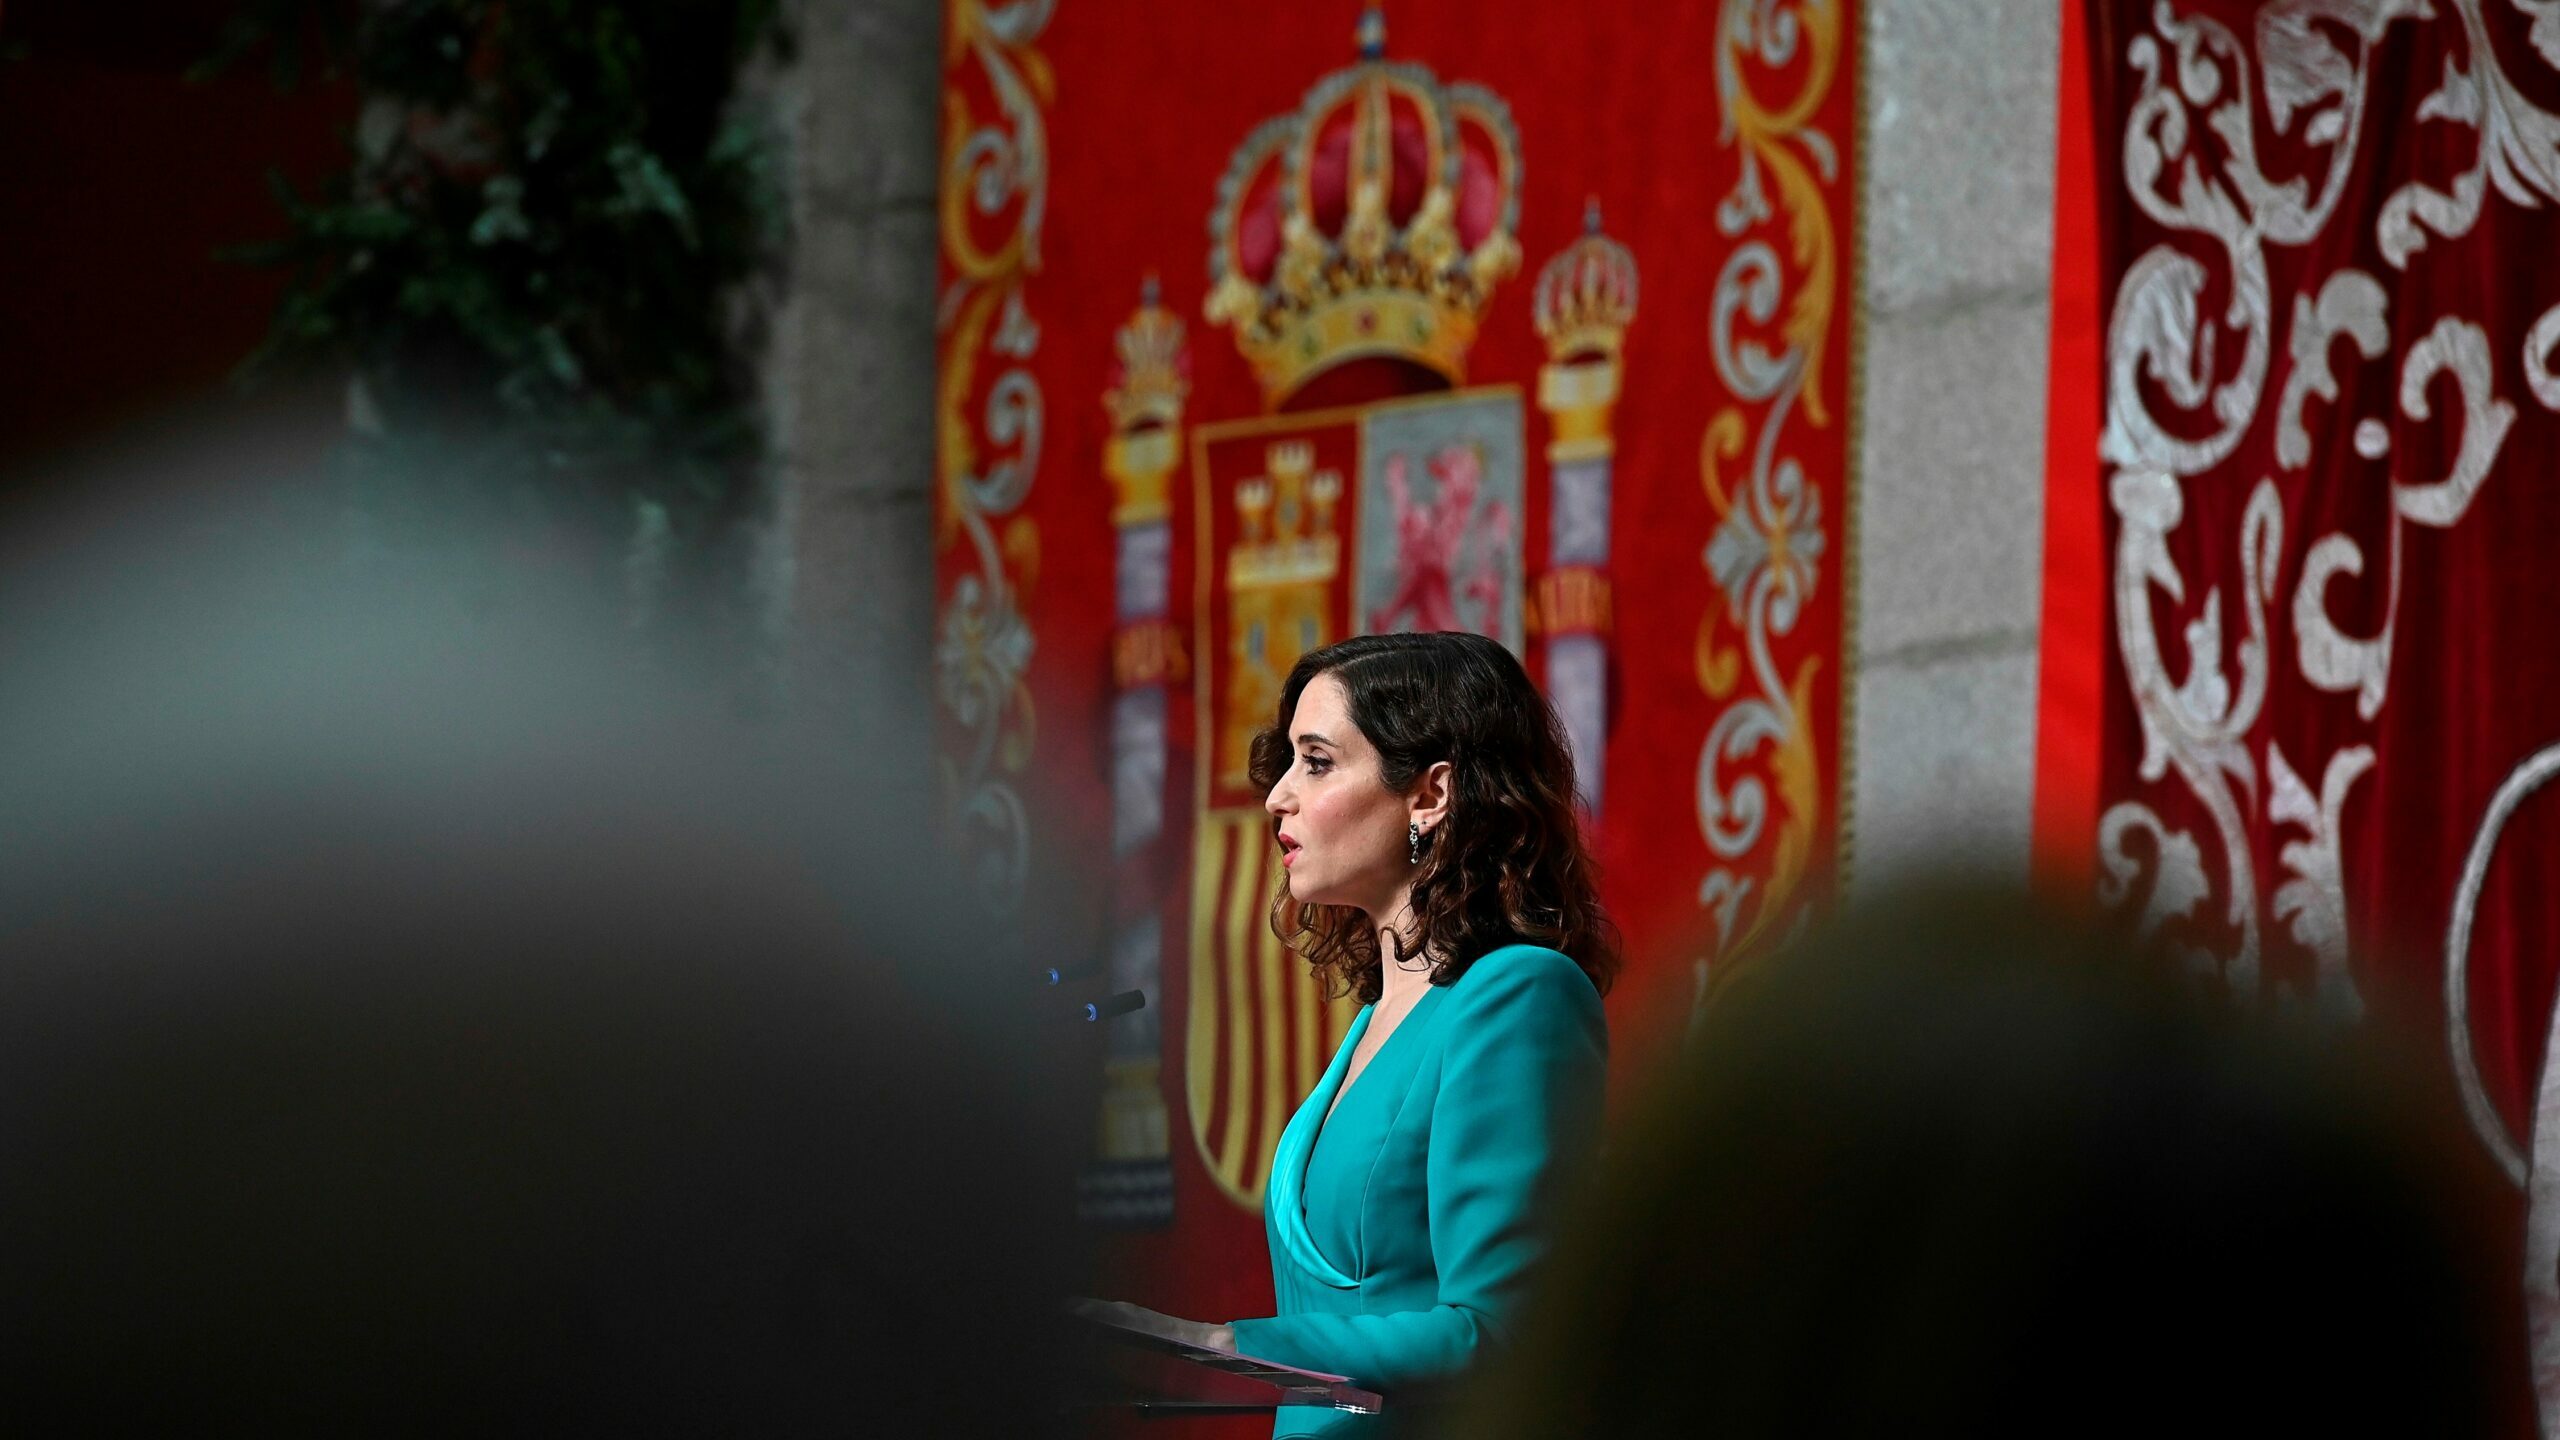 Ayuso, la "santa patrona de los bares", única española en la lista de europeos influyentes de 'Político'